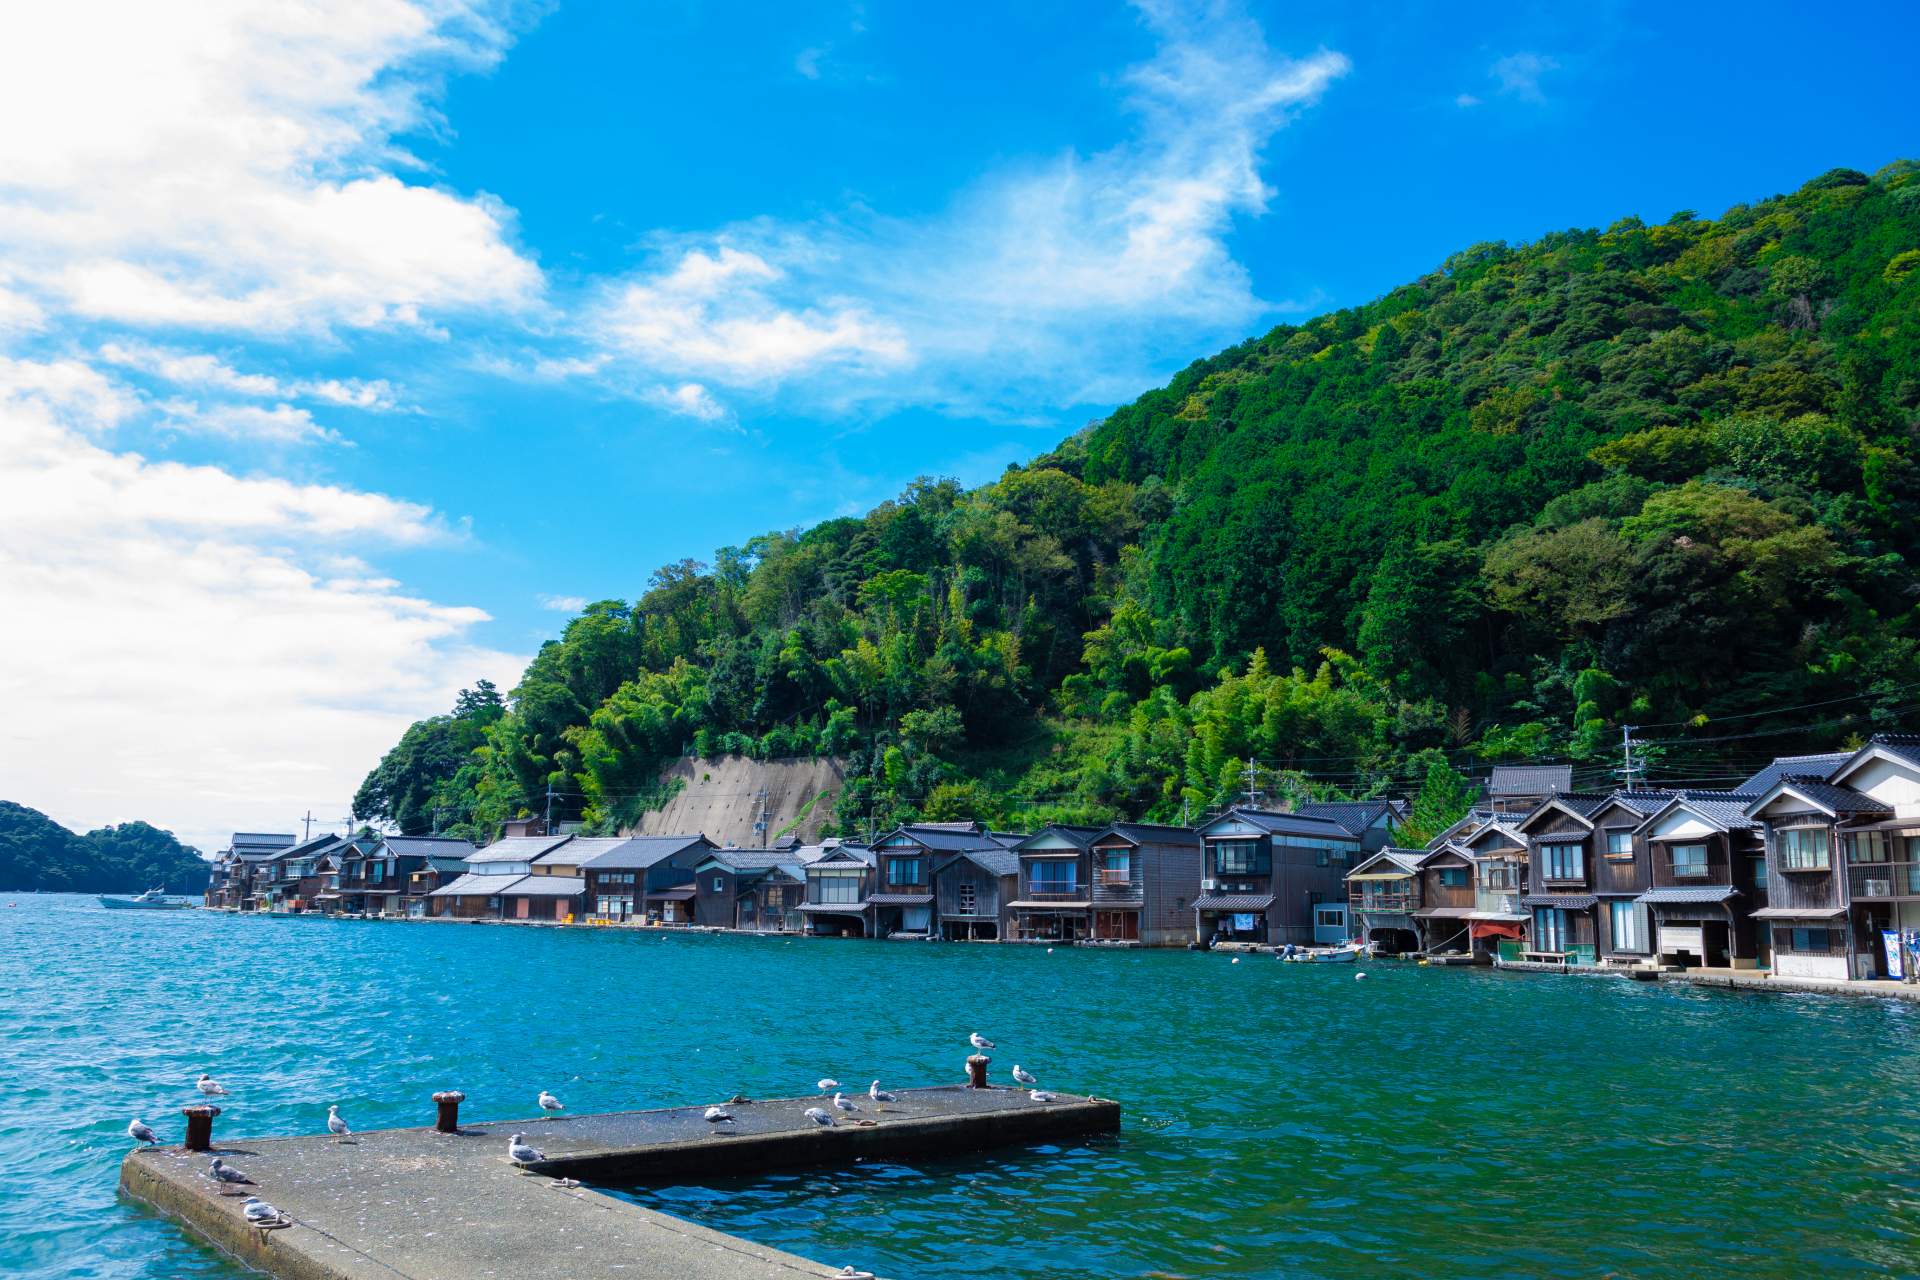 ノスタルジックな風景が広がる伊根の舟屋群。